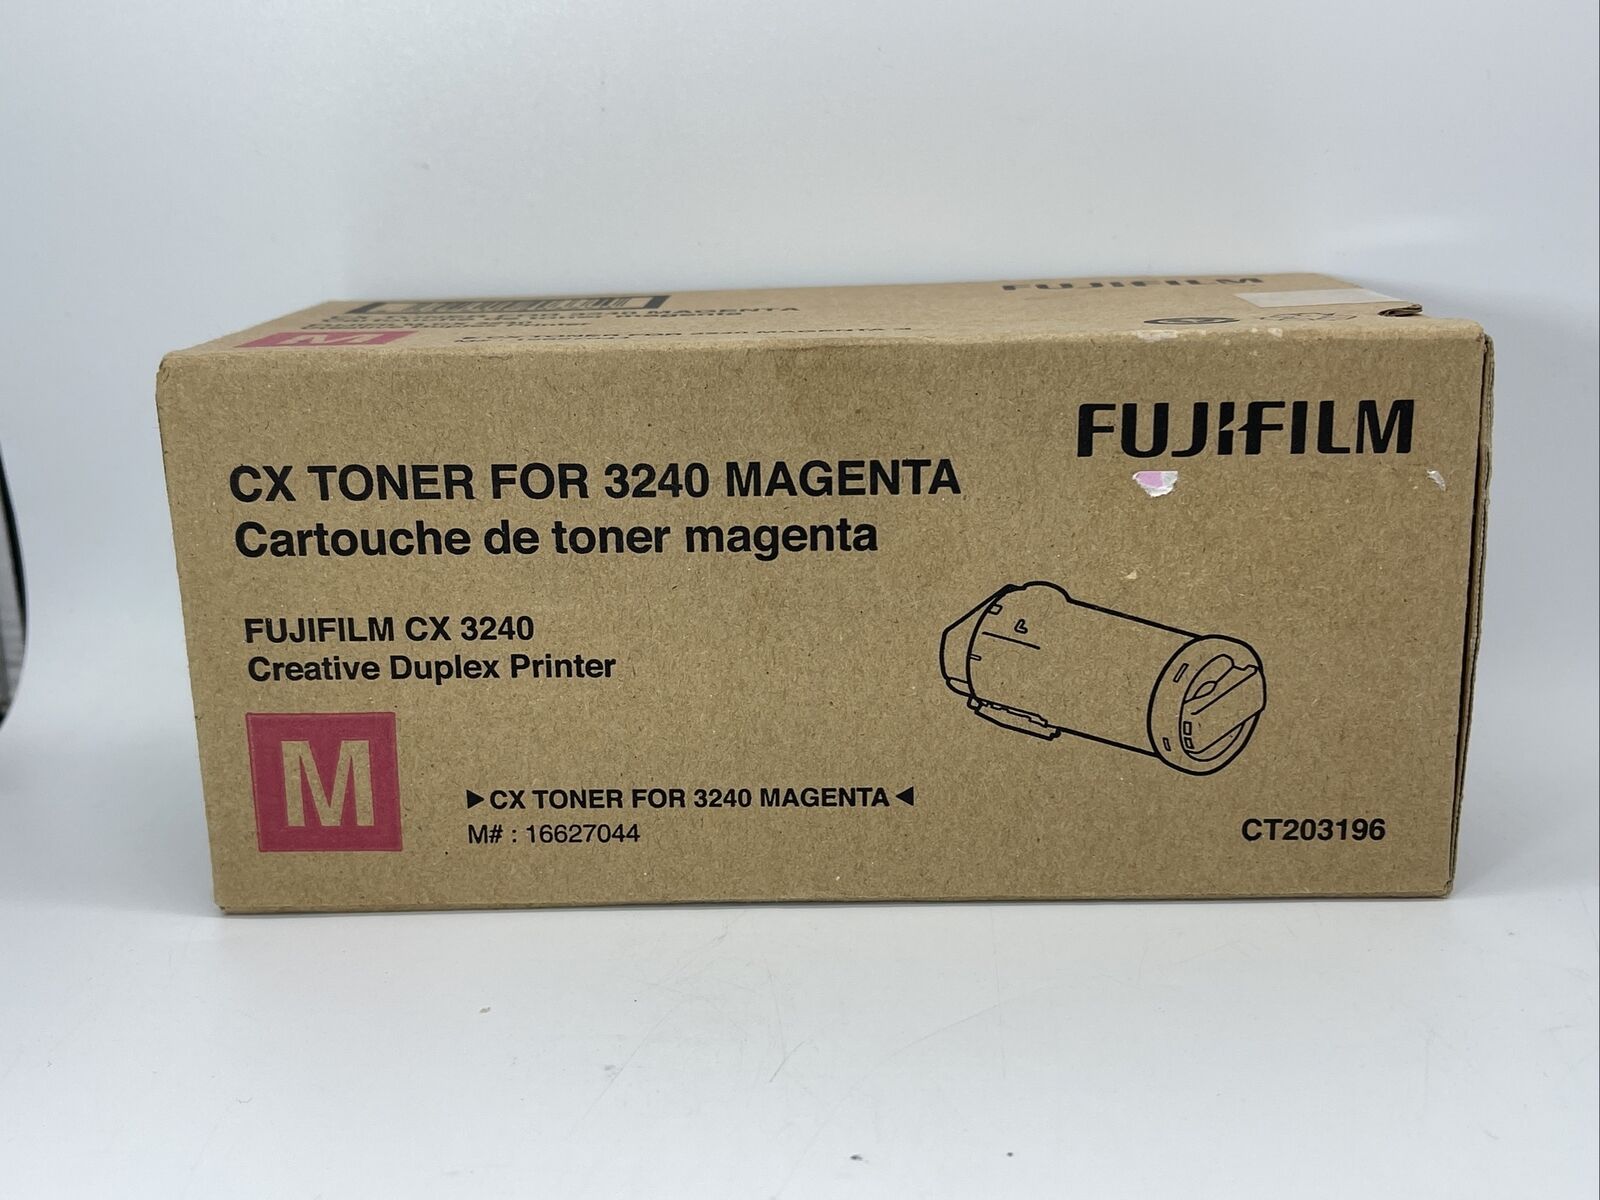 New Sealed Fujifilm CX Drum For 3240 Magenta Genuine OEM Original CT203196